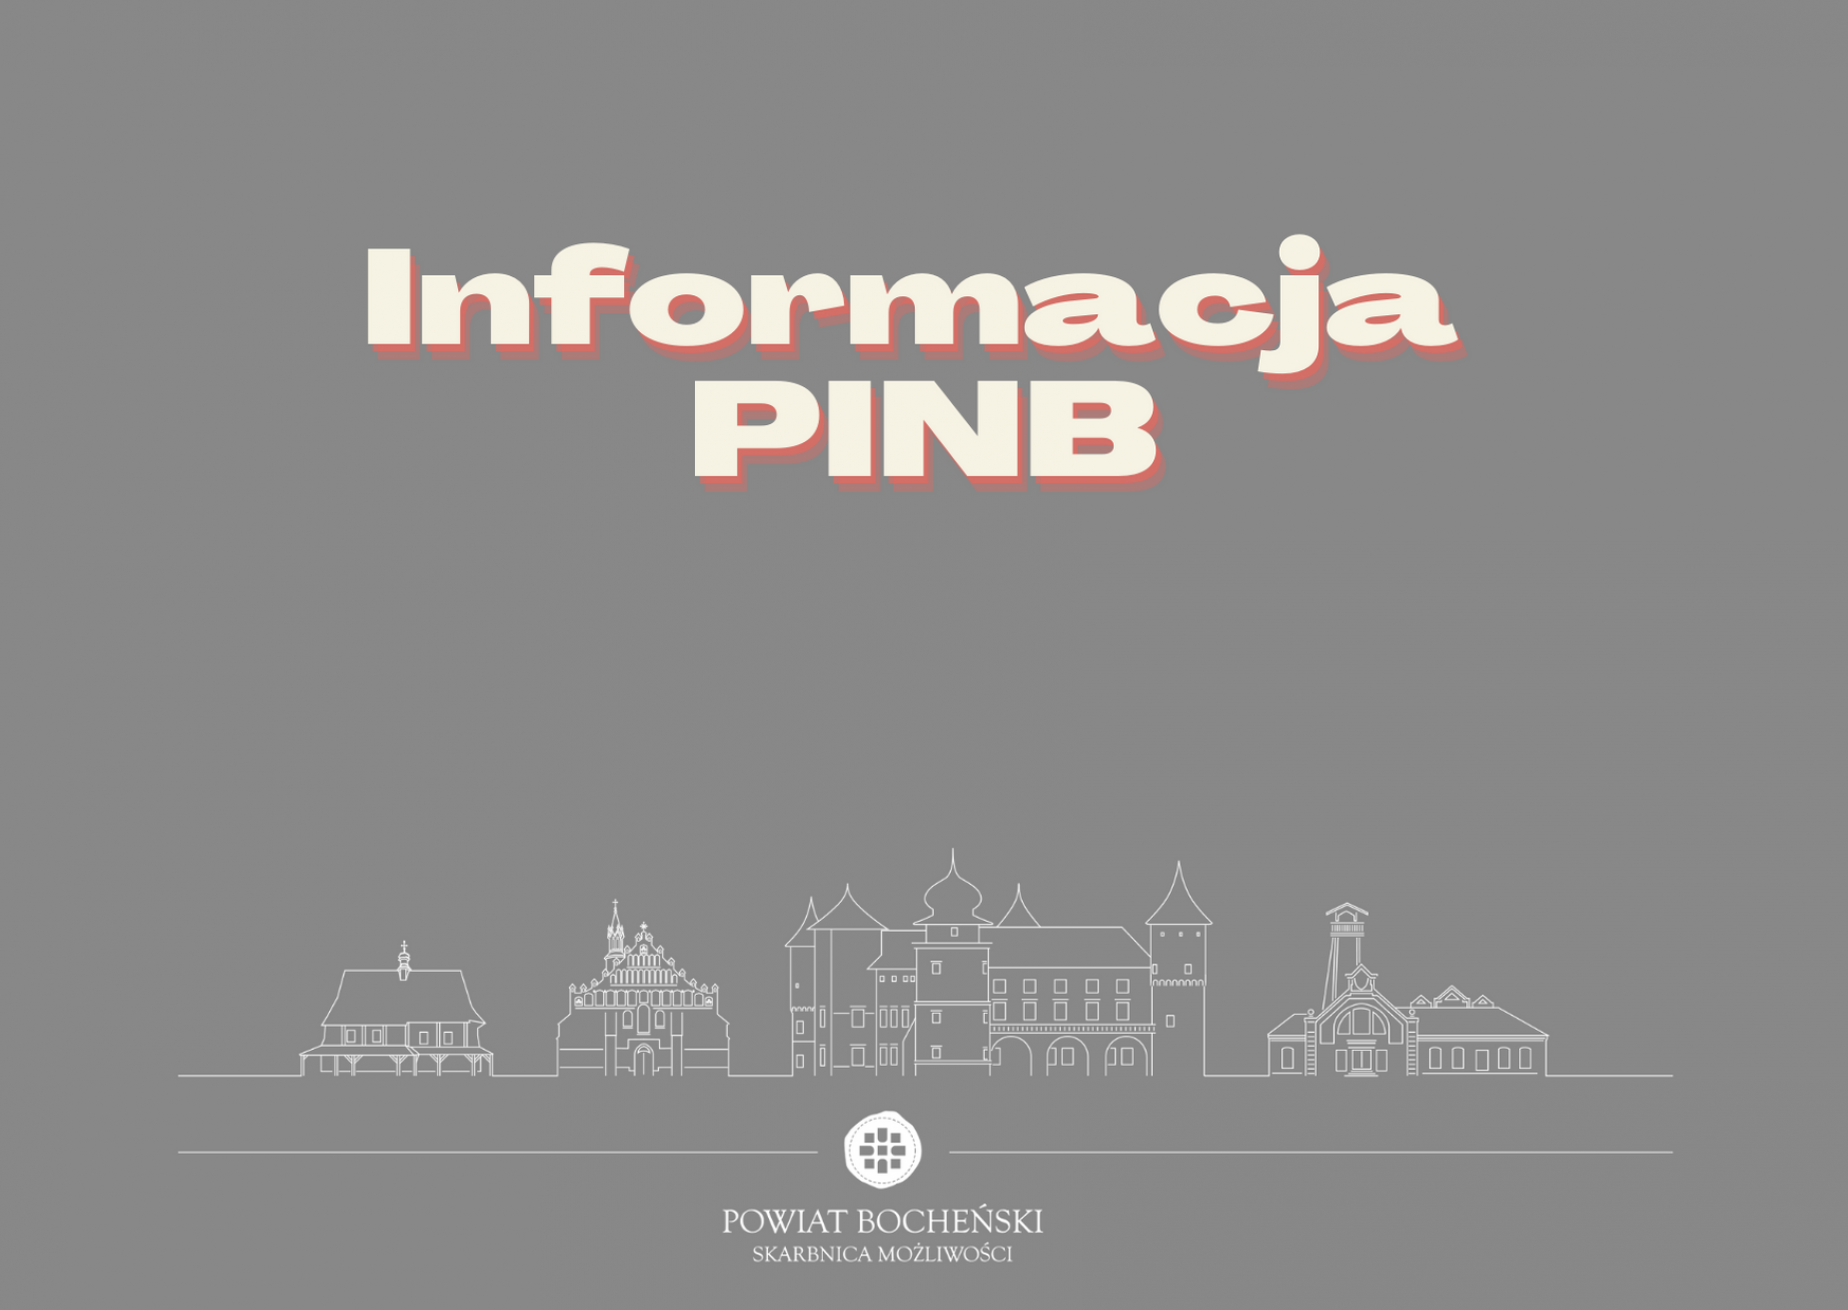 Informacja w sprawie ograniczenia obsługi przez PINB